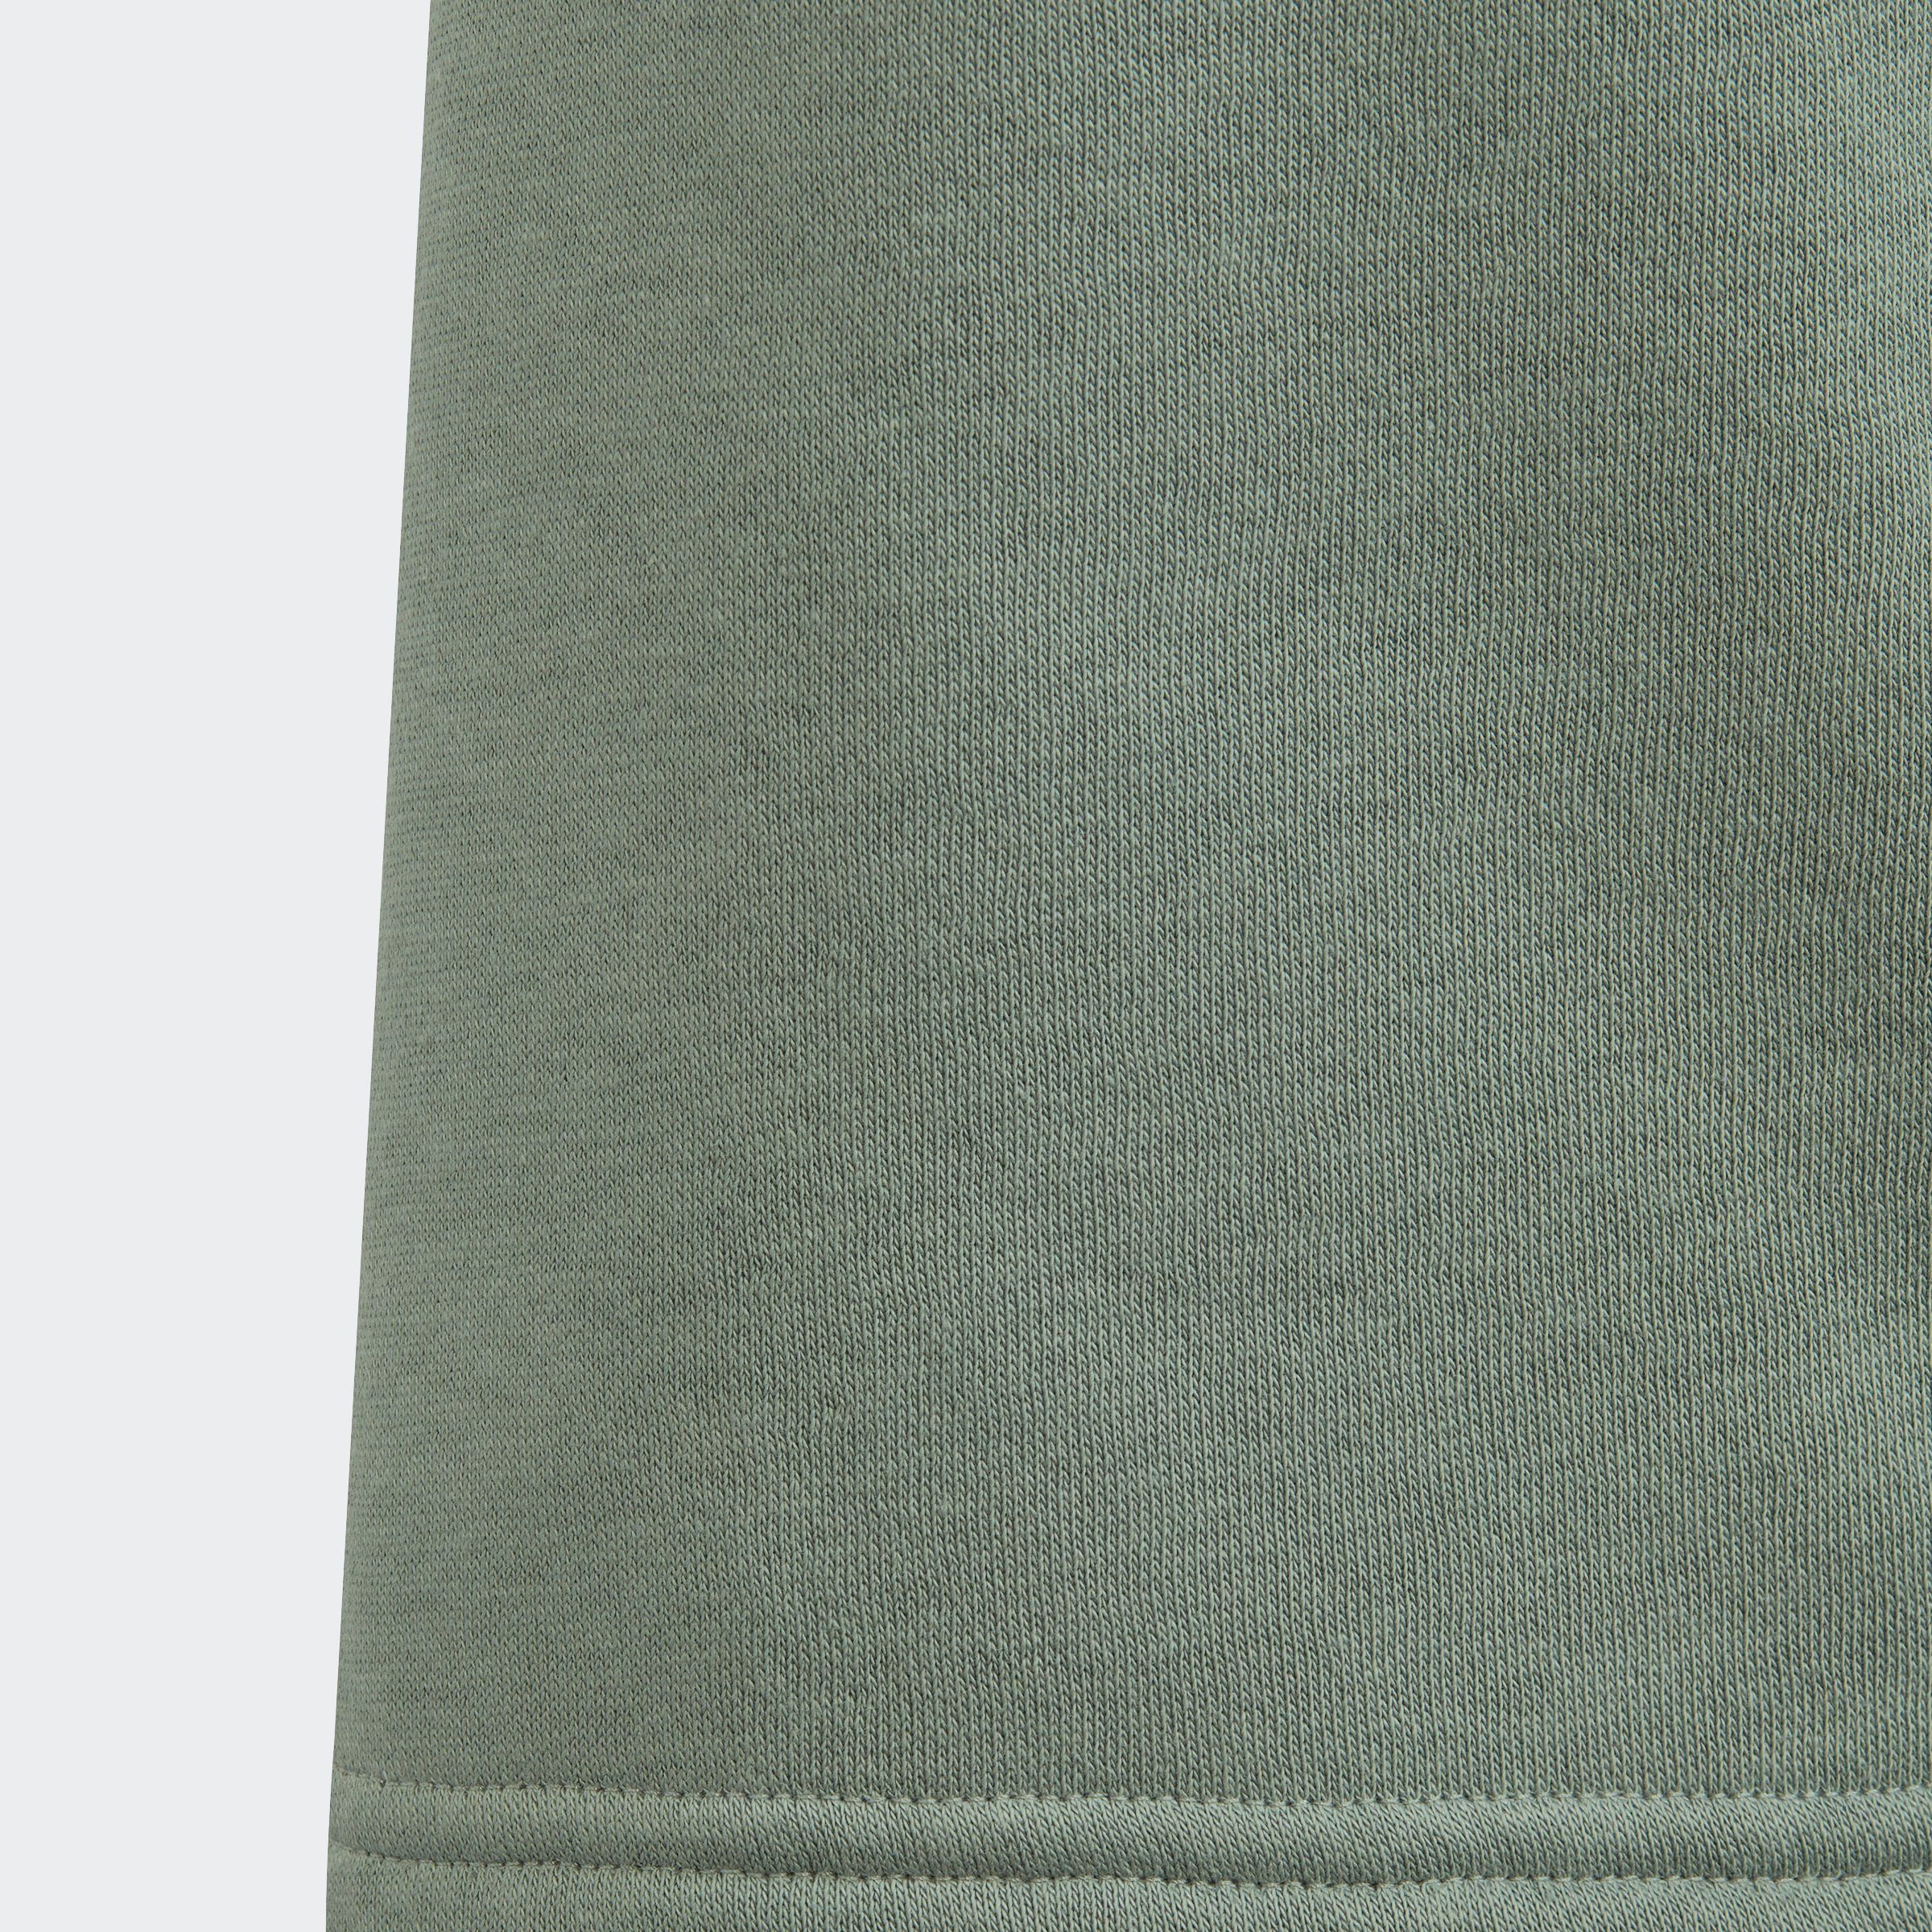 Green SHORTS Silver Originals adidas Shorts (1-tlg)